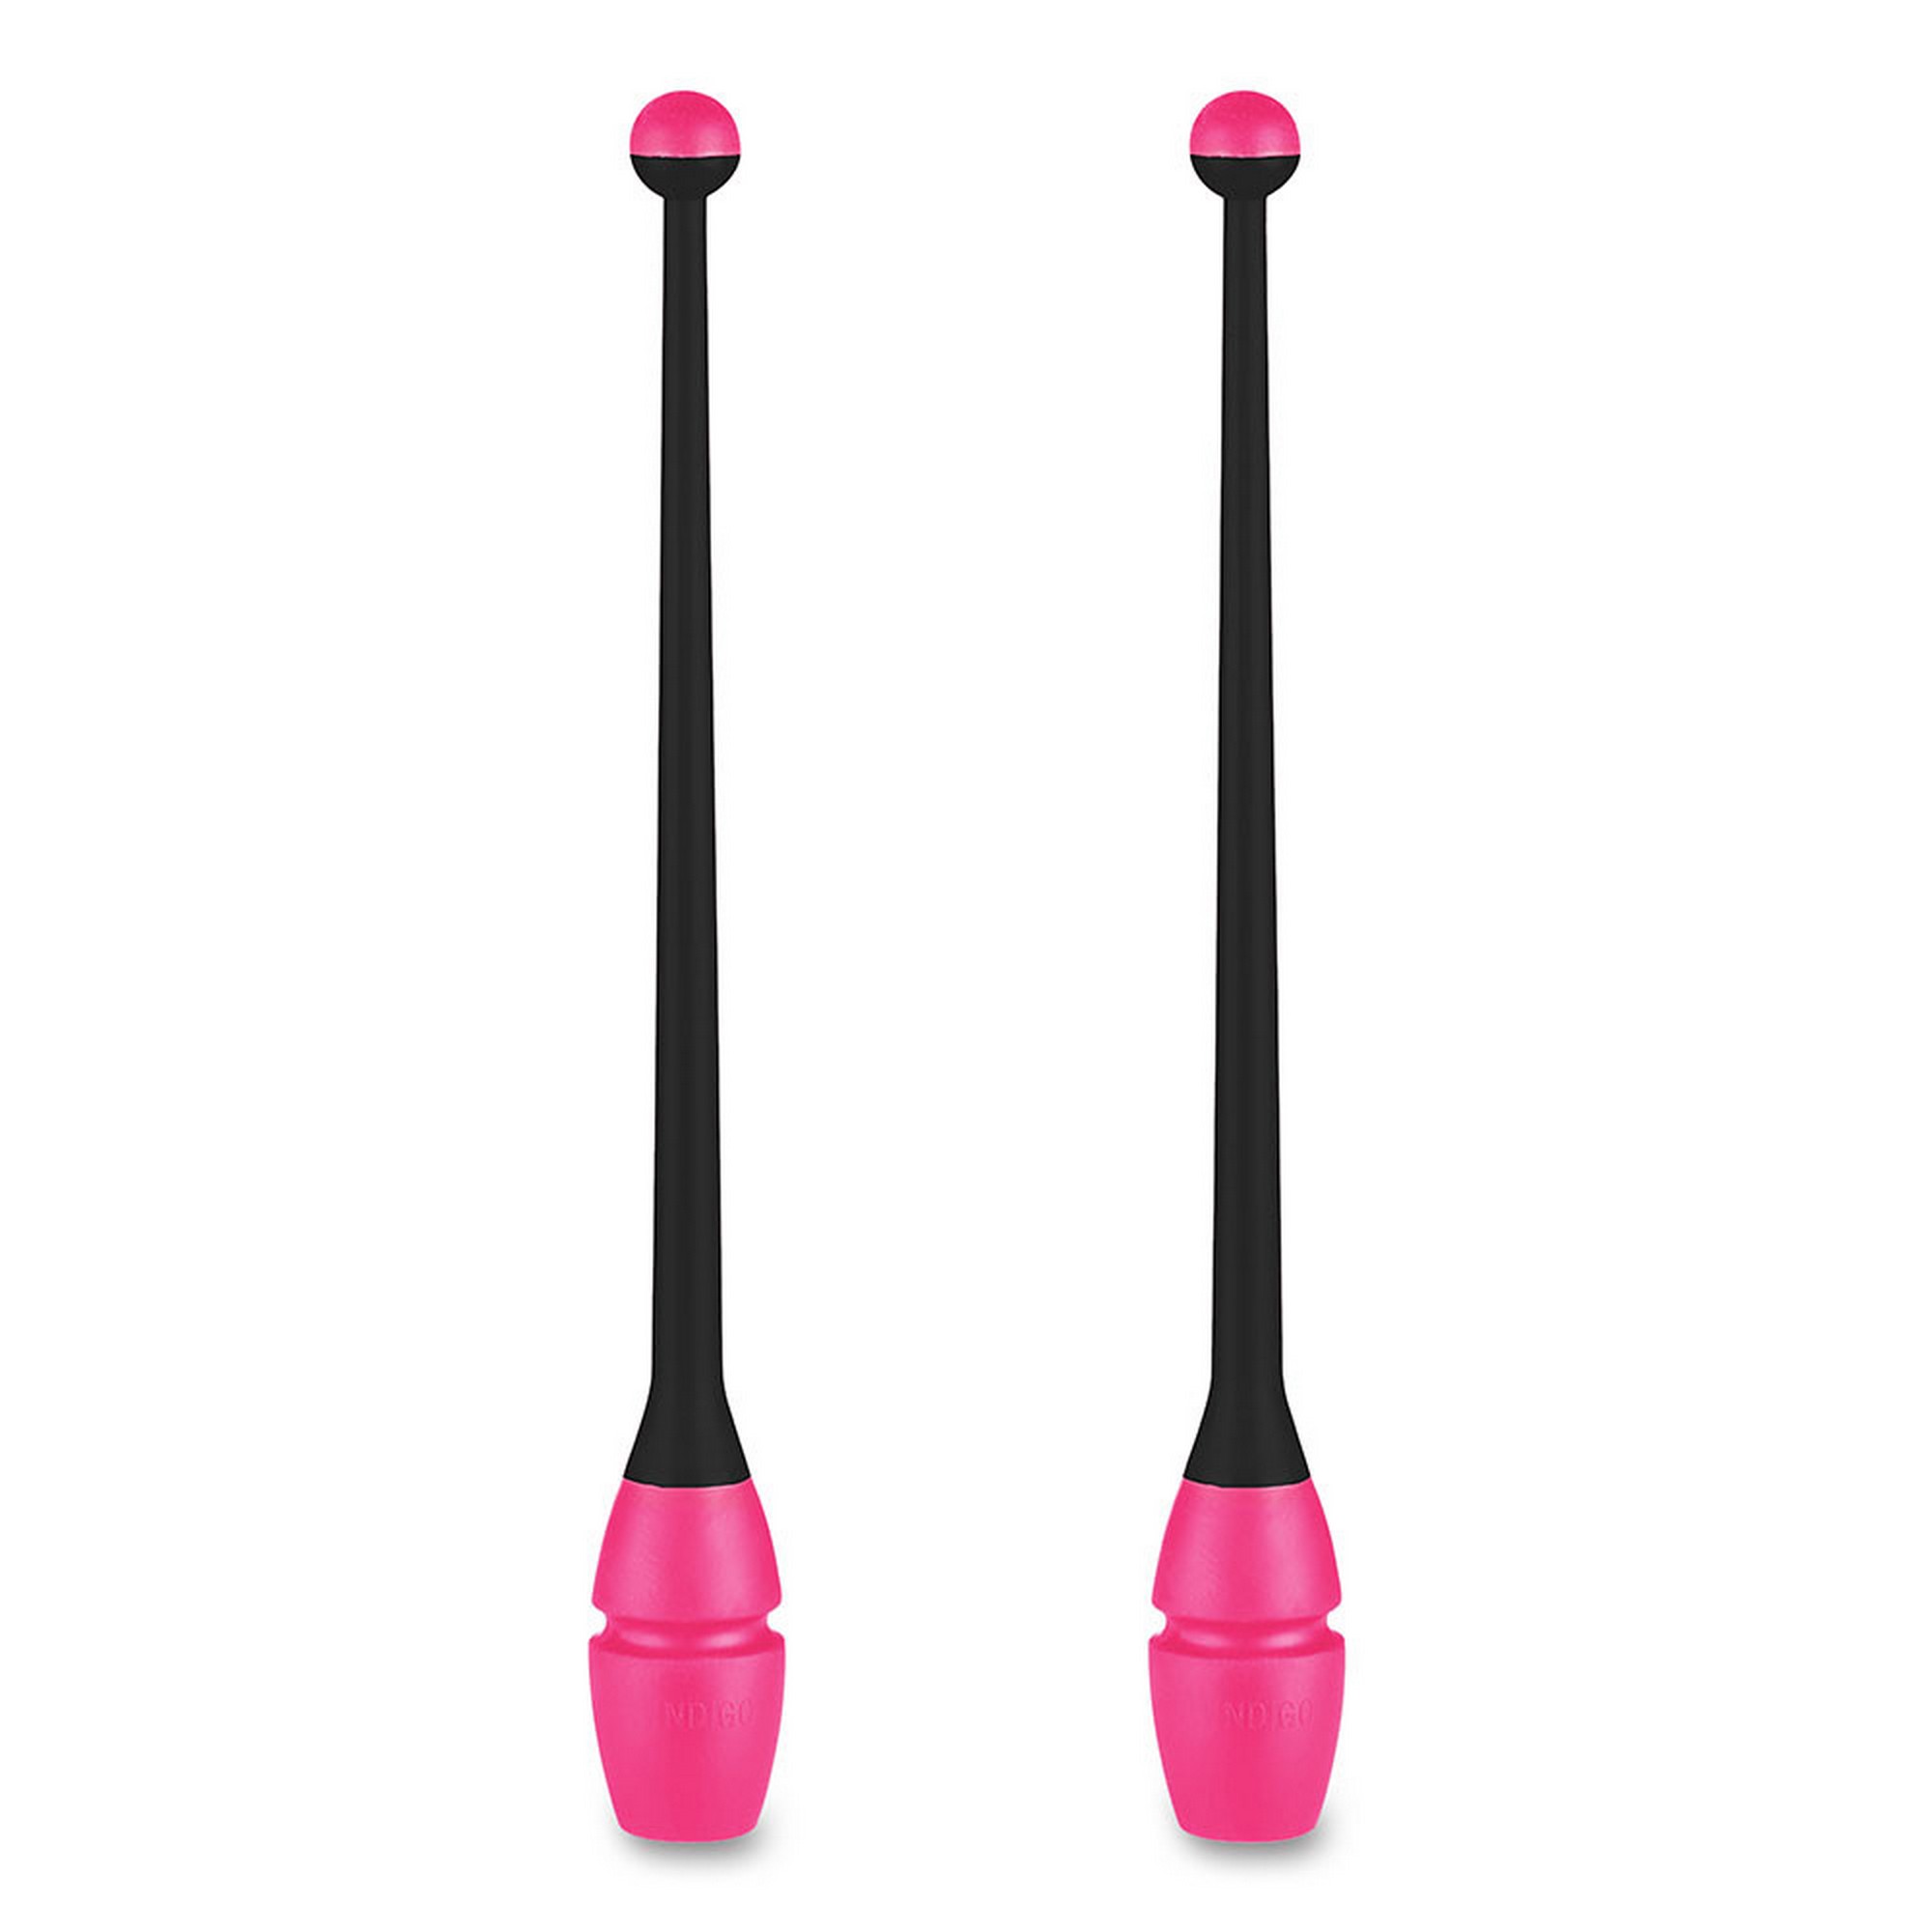 Булавы для художественной гимнастики Indigo 36 см, пластик, каучук, 2шт IN017-BKP черный-розовый